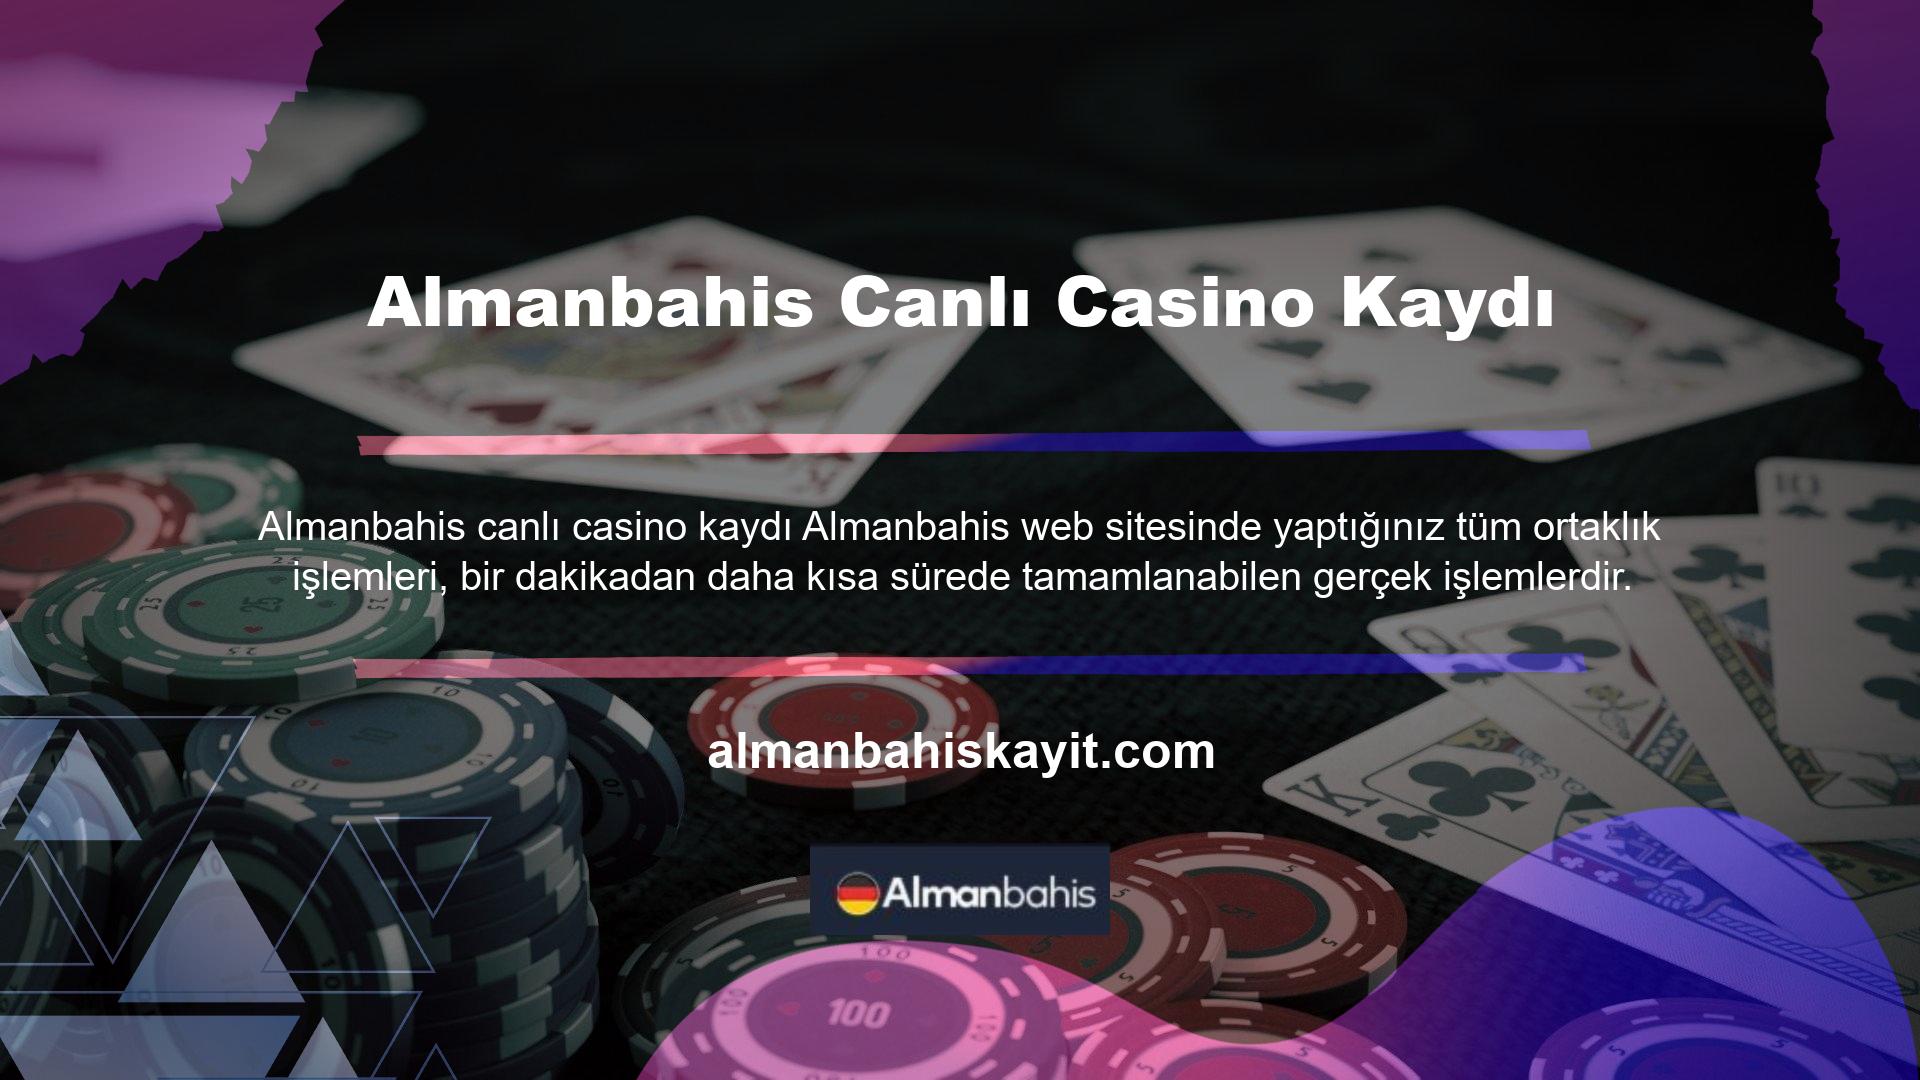 Almanbahis canlı casino fırsatlarından yararlanmak isteyen kullanıcılar mevcut adreslerinden kolayca hesap açabilirler